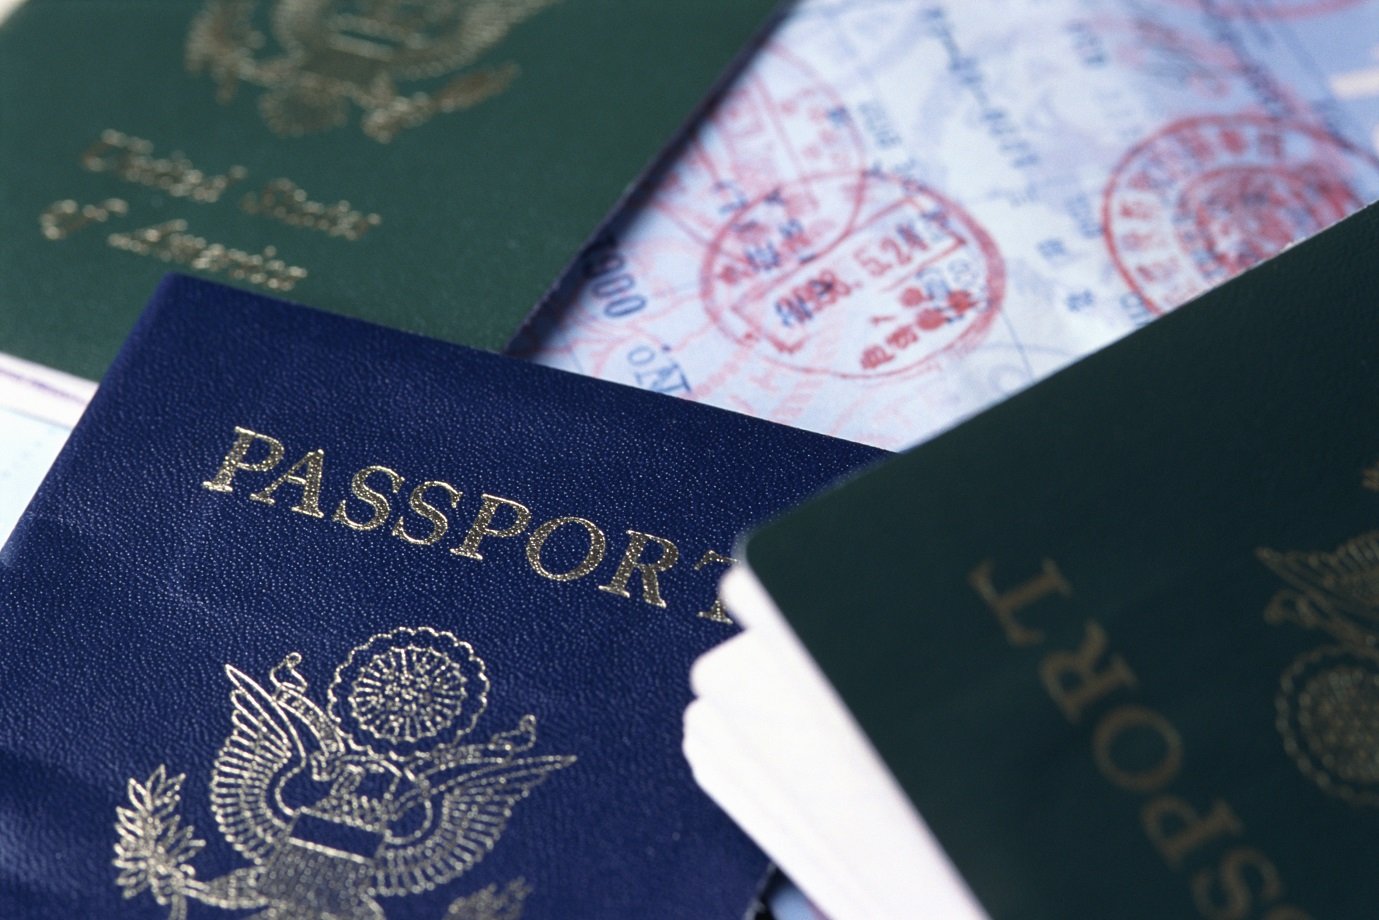 Posponen exigencia de visado a turistas de EE.UU., Canadá y Australia